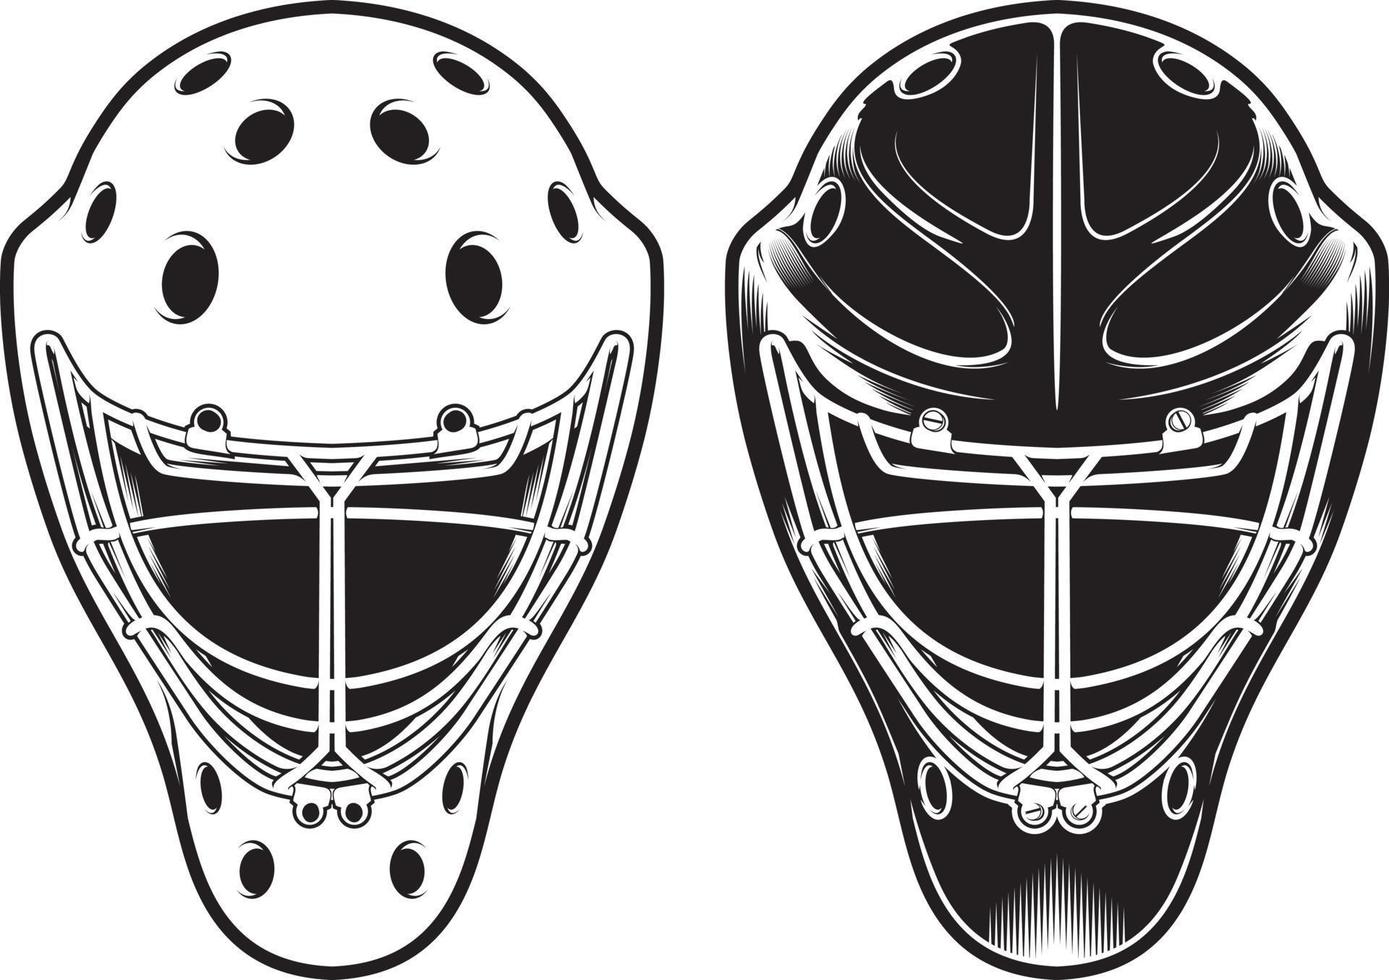 Goalie helmet. Hockey equipment isolated on white vector